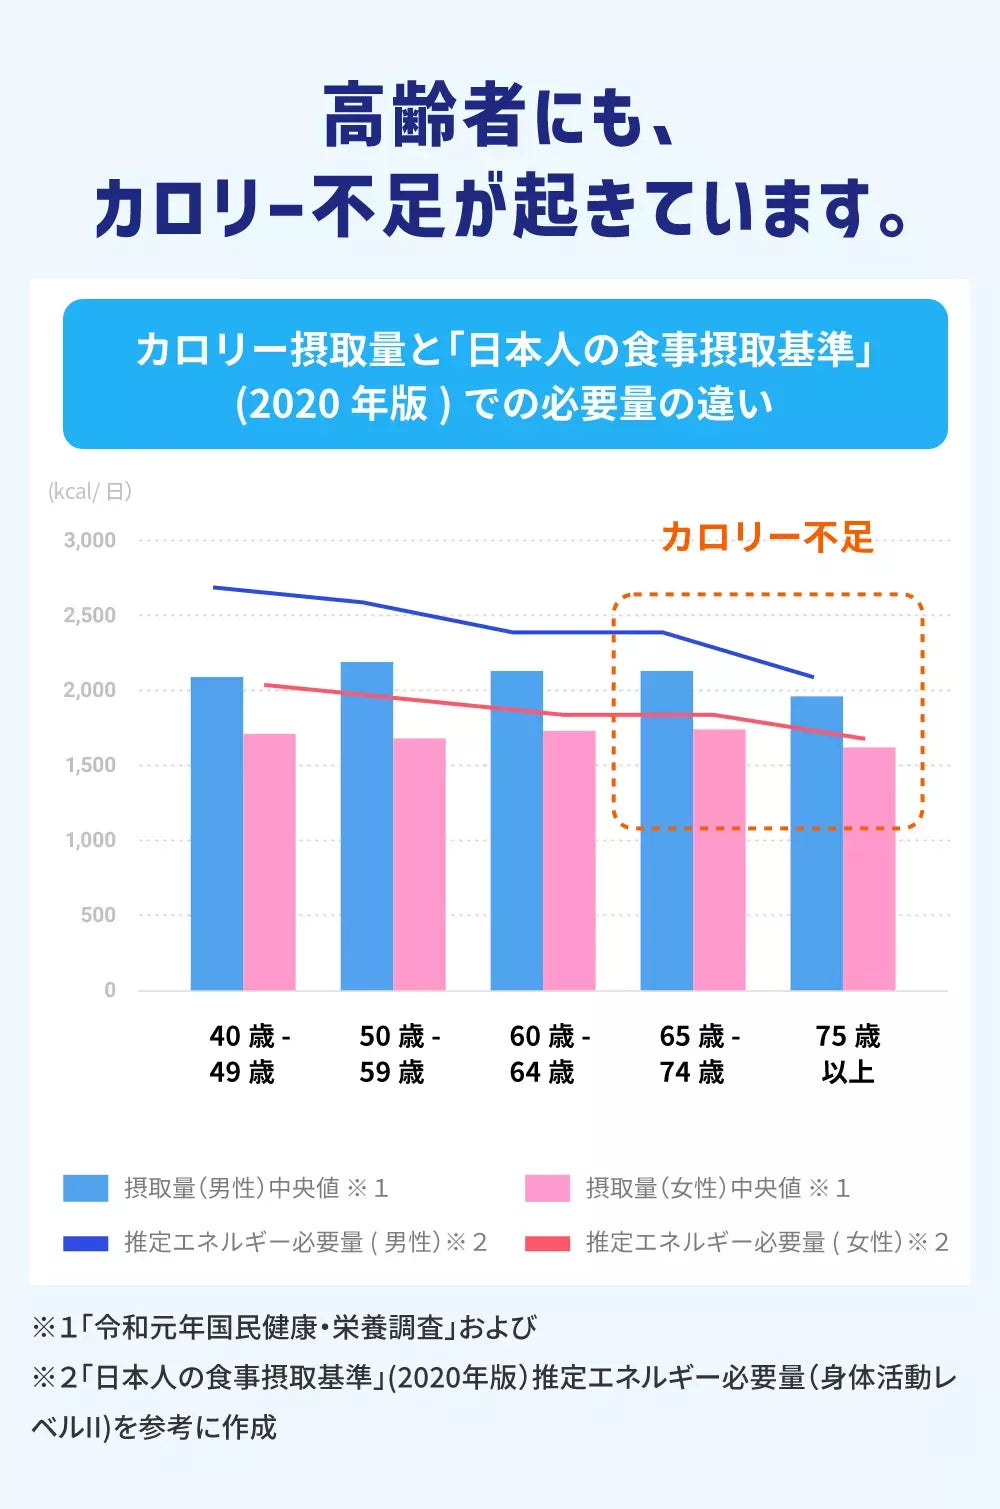 高齢者にも、カロリー不足が起きています。カロリー摂取量と「日本人の食事摂取基準」(2020年版)での必要量の違い